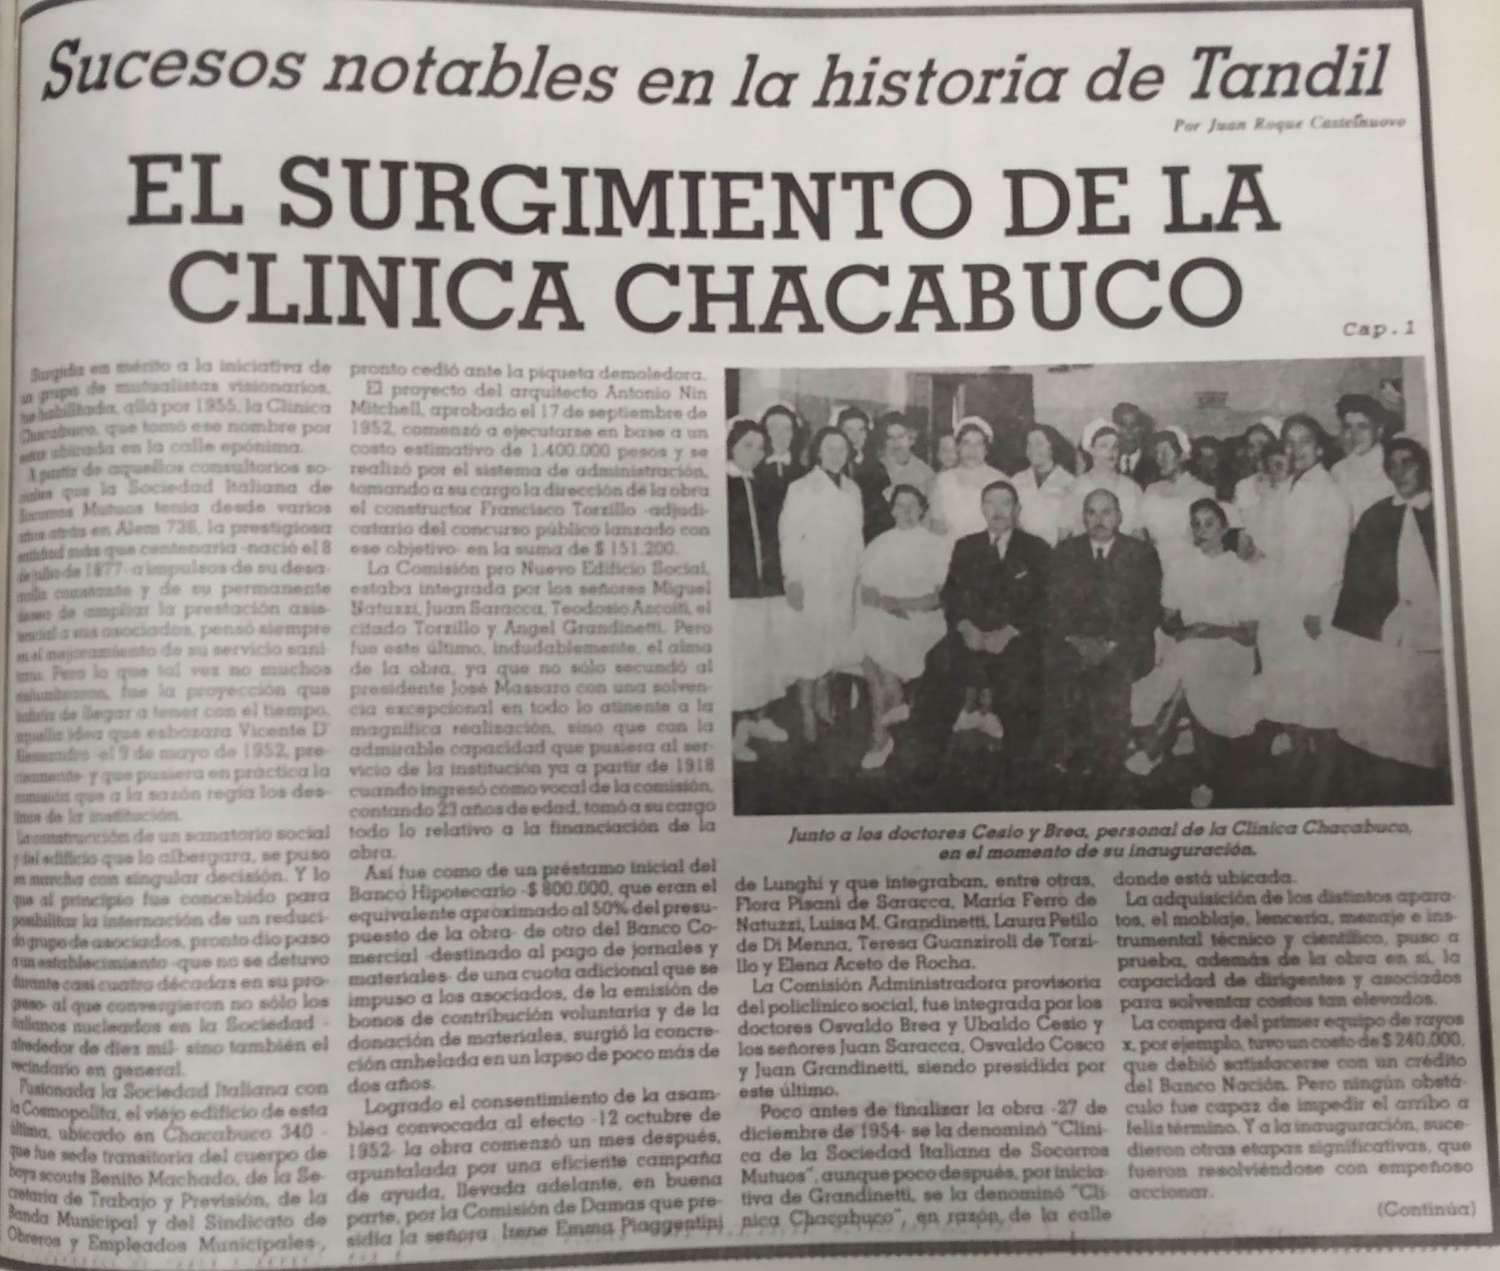 Capítulo 1: El surgimiento de la Clínica Chacabuco